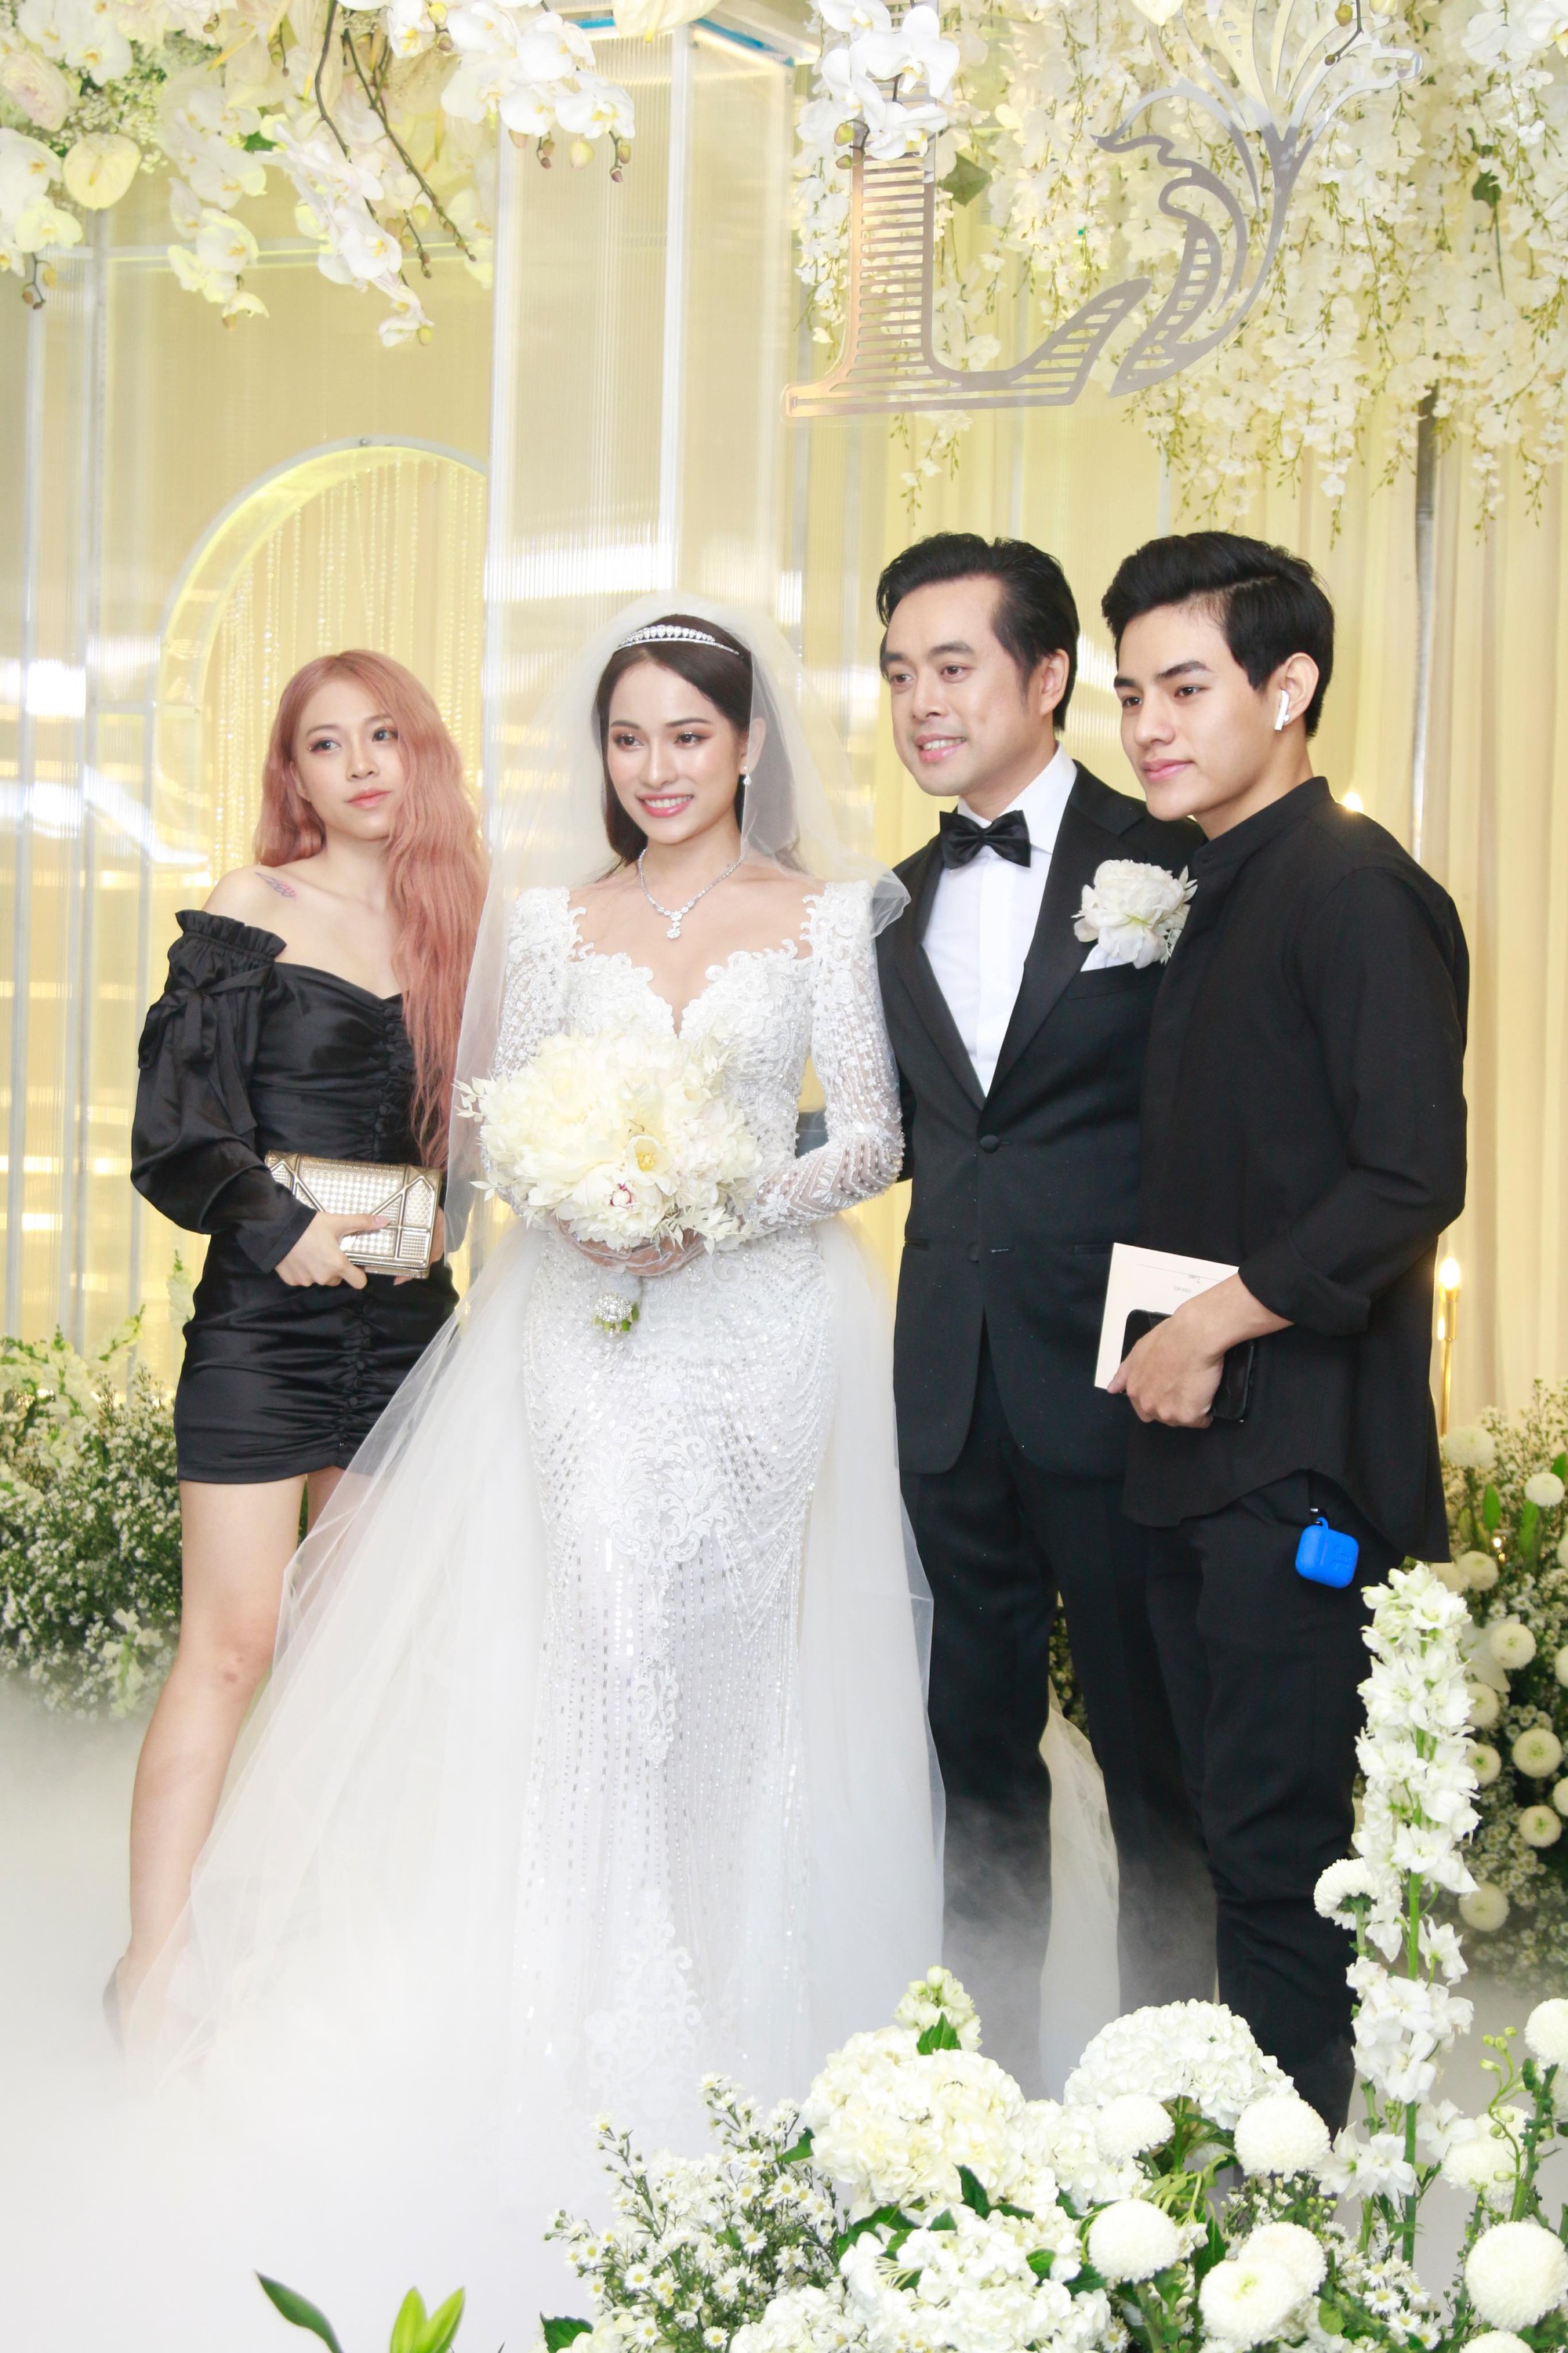 Tiệc cưới chính thức bắt đầu, cô dâu Sara Lưu âu yếm lau nhẹ vết son của mình trên môi chú rể Dương Khắc Linh-24